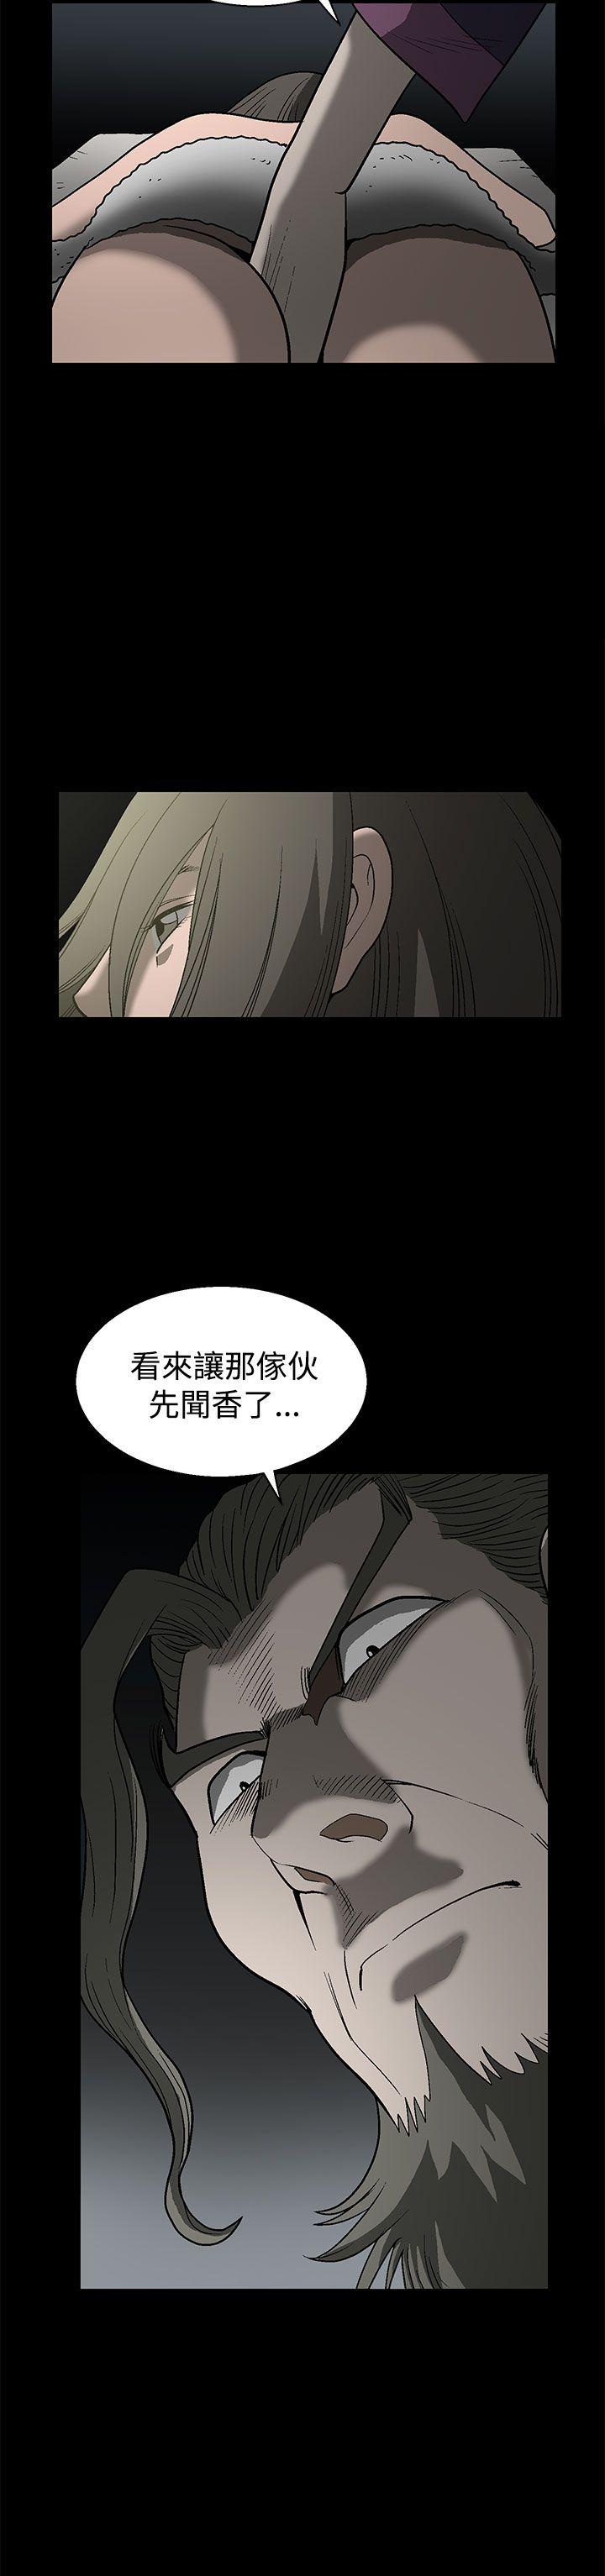 韩国污漫画 煦娜 第1话 43